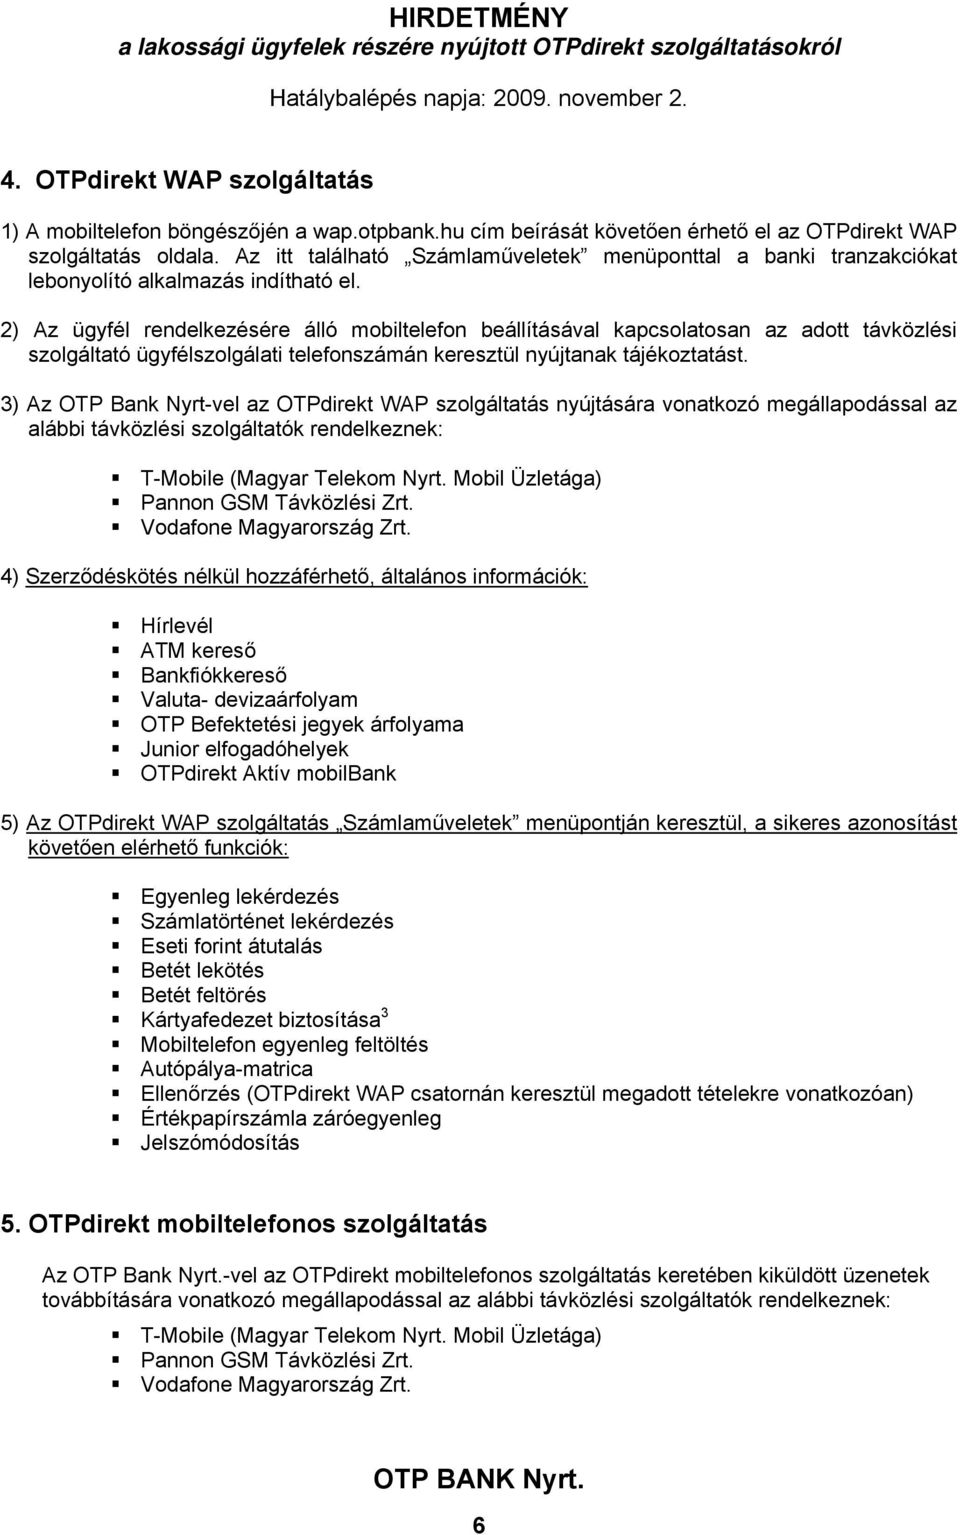 HIRDETMÉNY a lakossági ügyfelek részére nyújtott OTPdirekt  szolgáltatásokról. I. OTPdirekt szolgáltatásokra vonatkozó speciális  rendelkezések - PDF Ingyenes letöltés